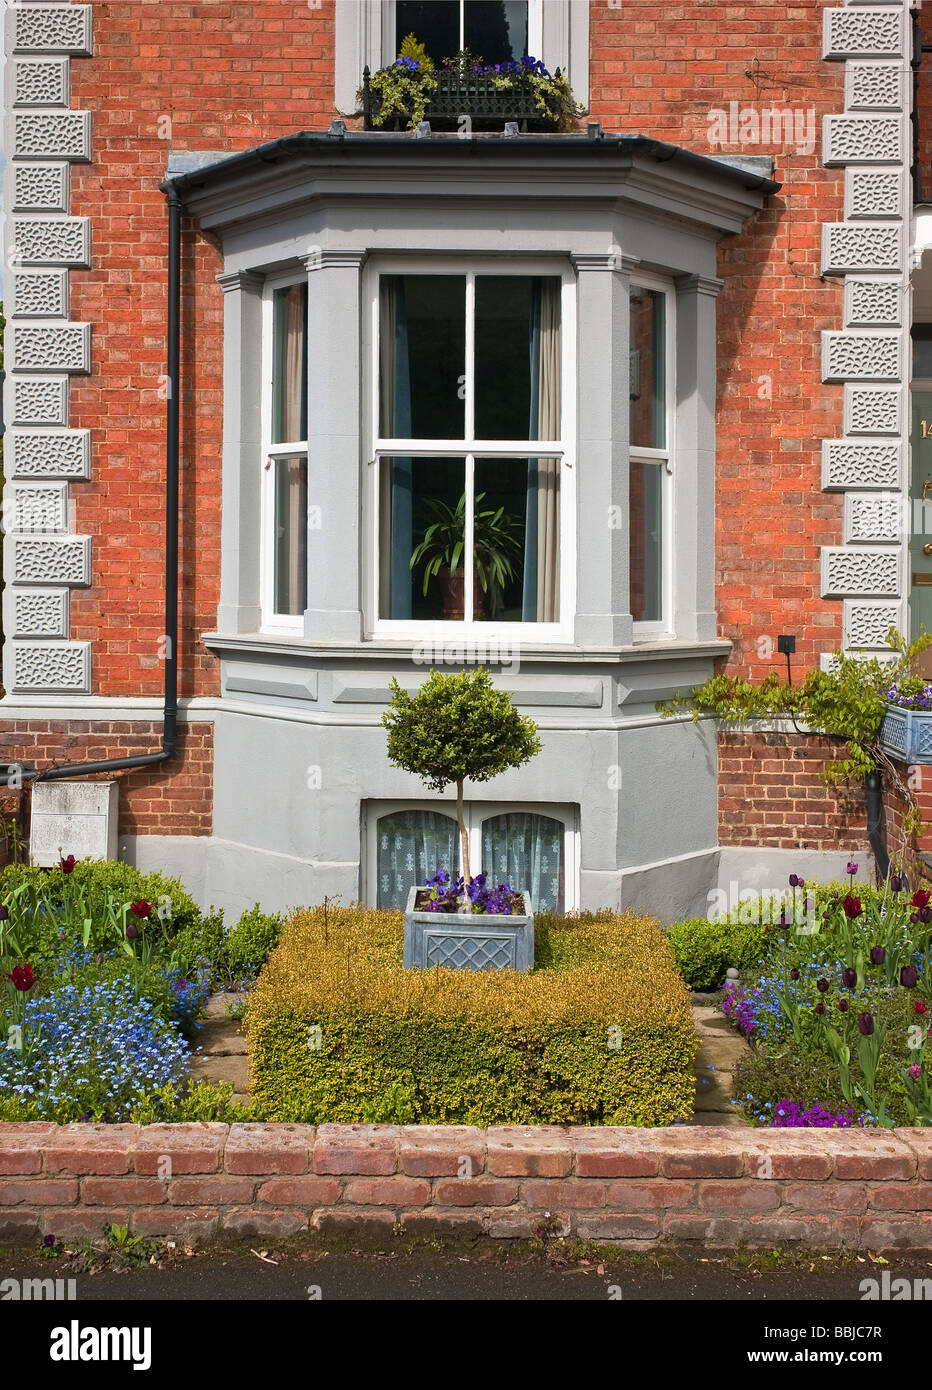 Baie vitrée et victorien petit jardin de devant vu depuis la rue Buckingham UK Banque D'Images